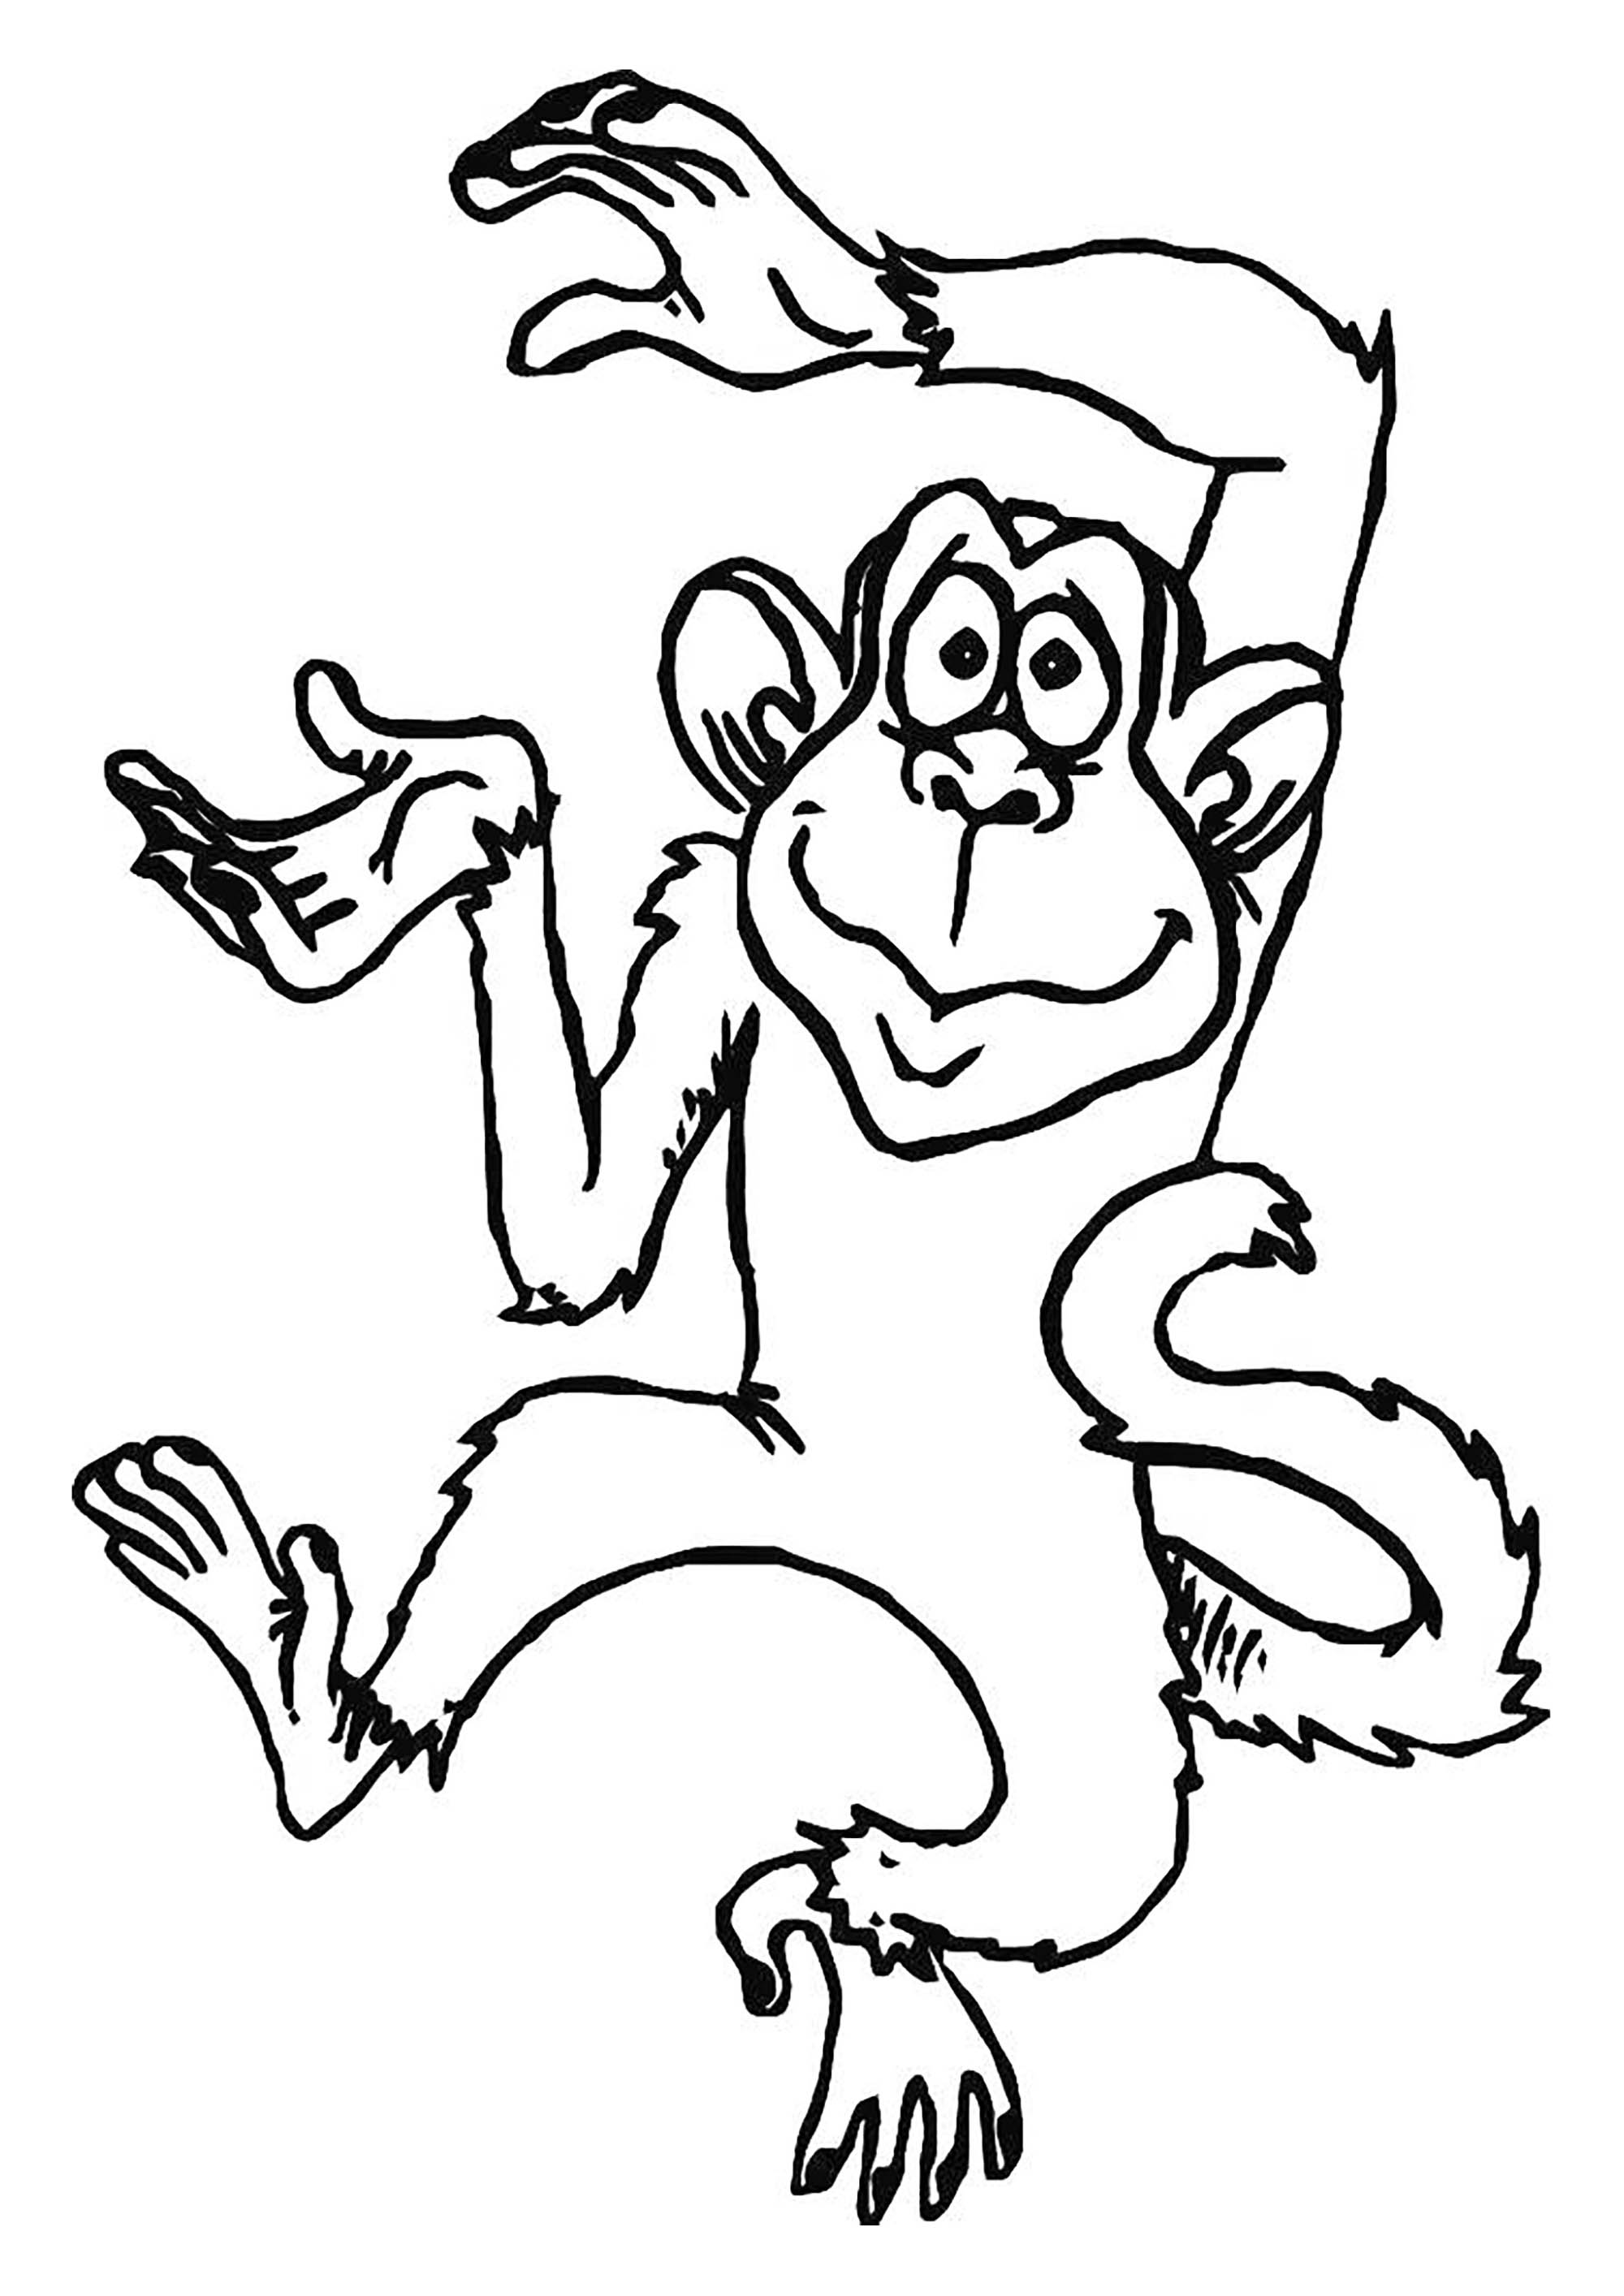 Dibujo de Mono para imprimir y colorear